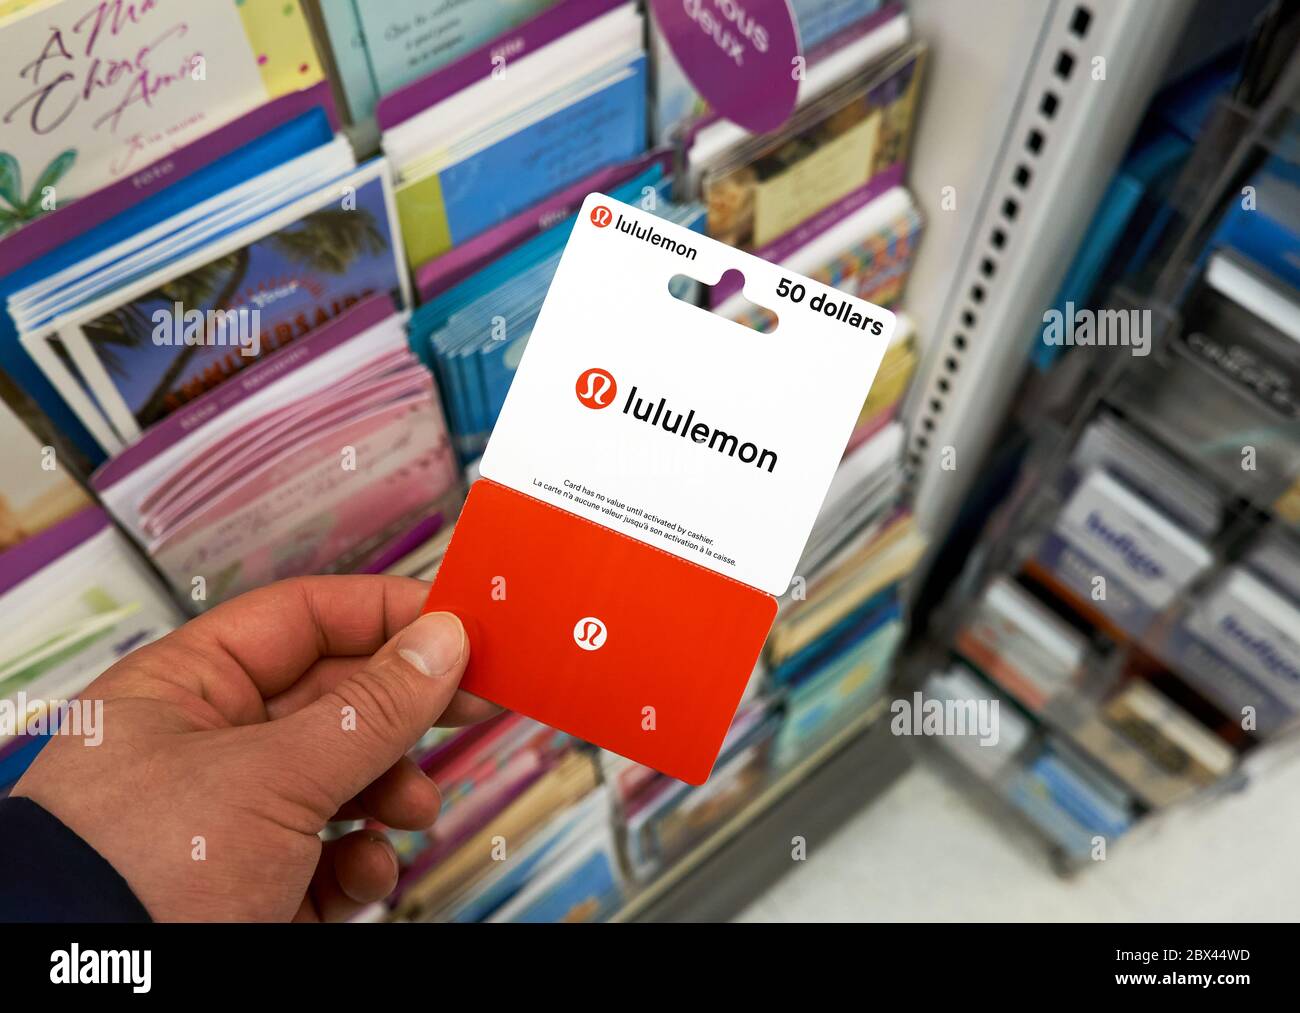 lululemon gift card amazon